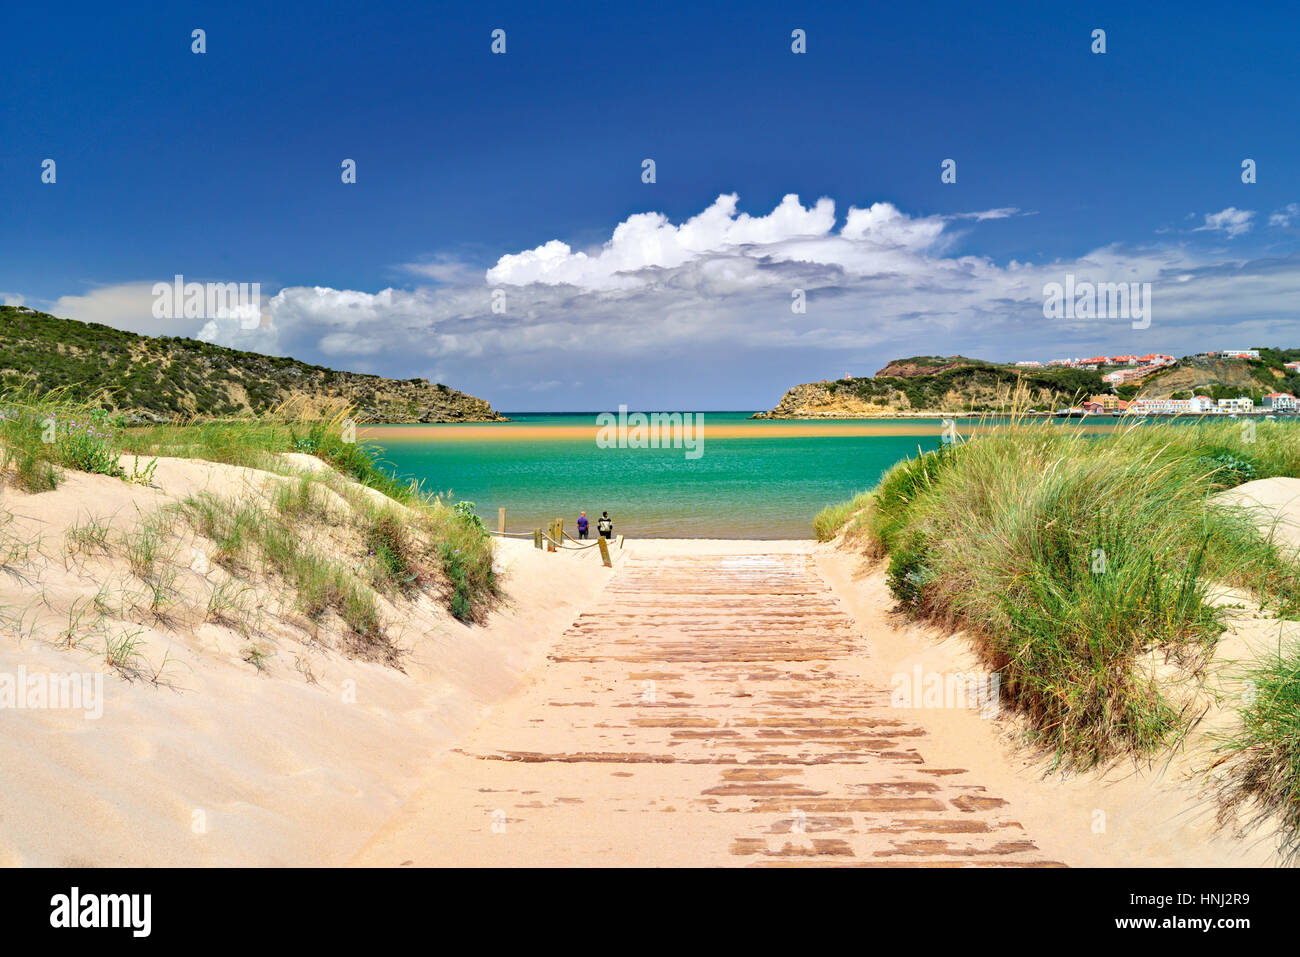 Portugal: Way and view to sand beach Praia da Concha de Sao Martinho do Porto Stock Photo